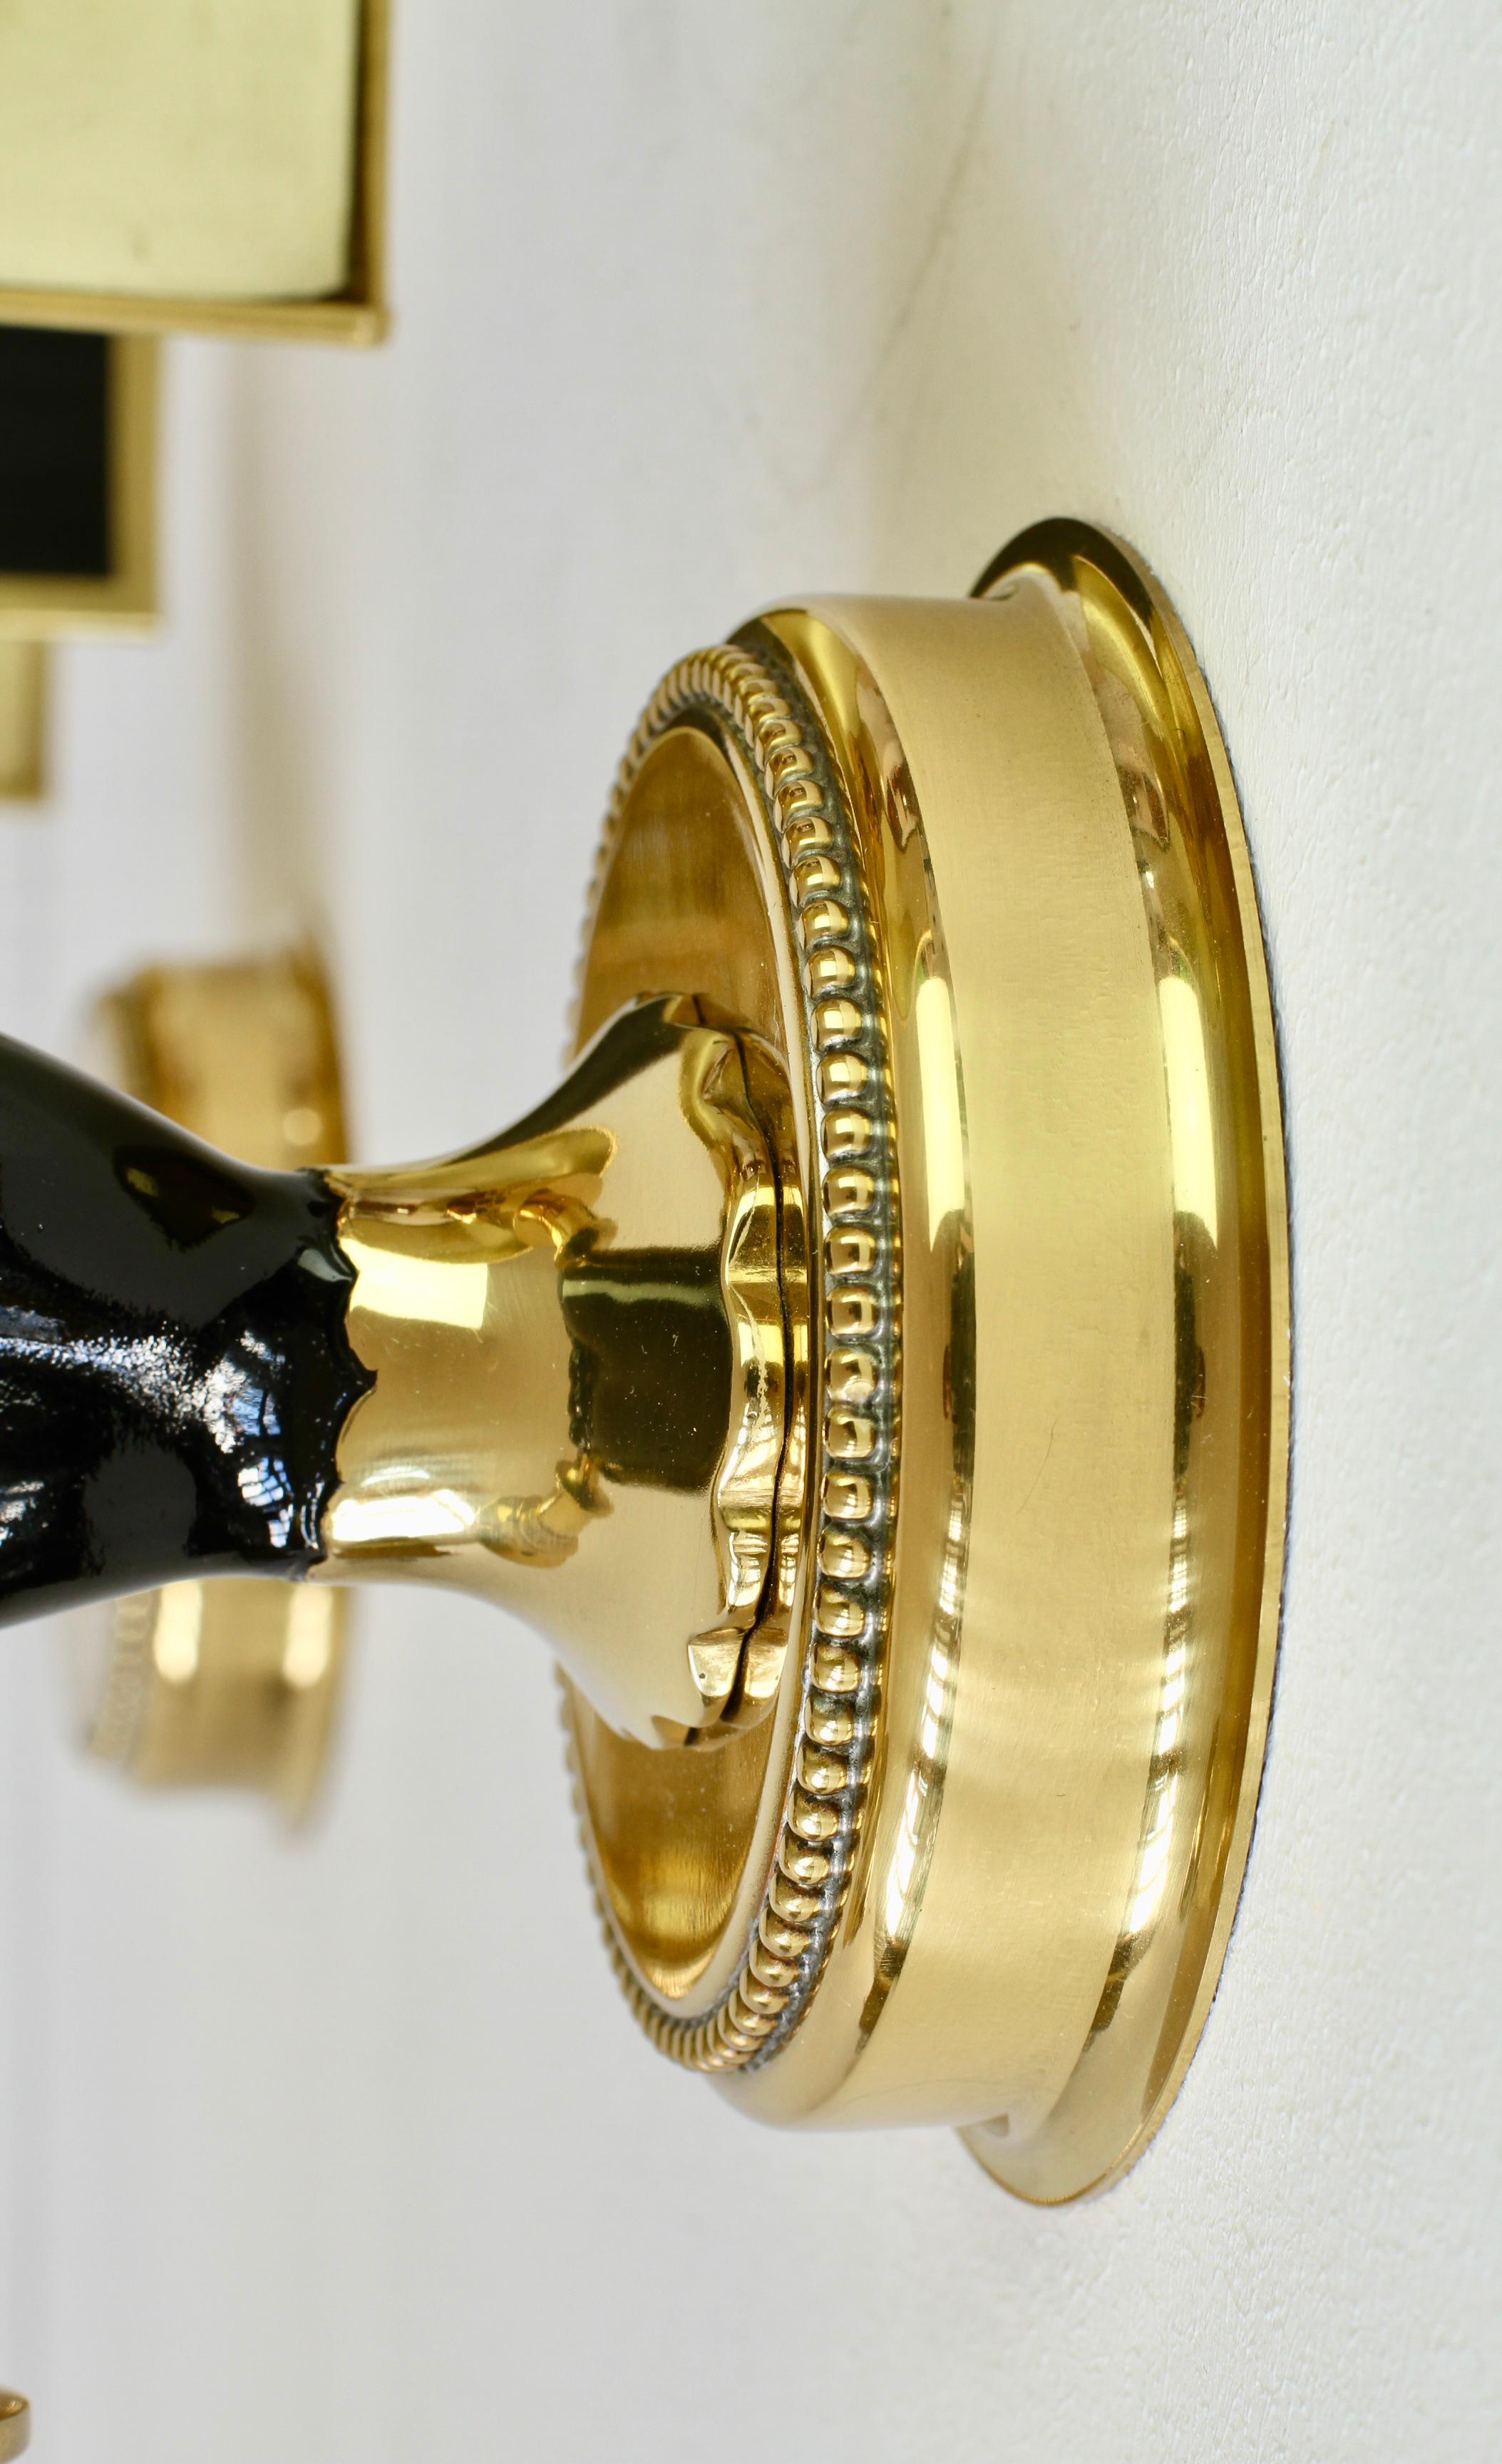 Maison Jansen Style Polished Brass Sconces by Vereinigte Werkstätten München For Sale 6